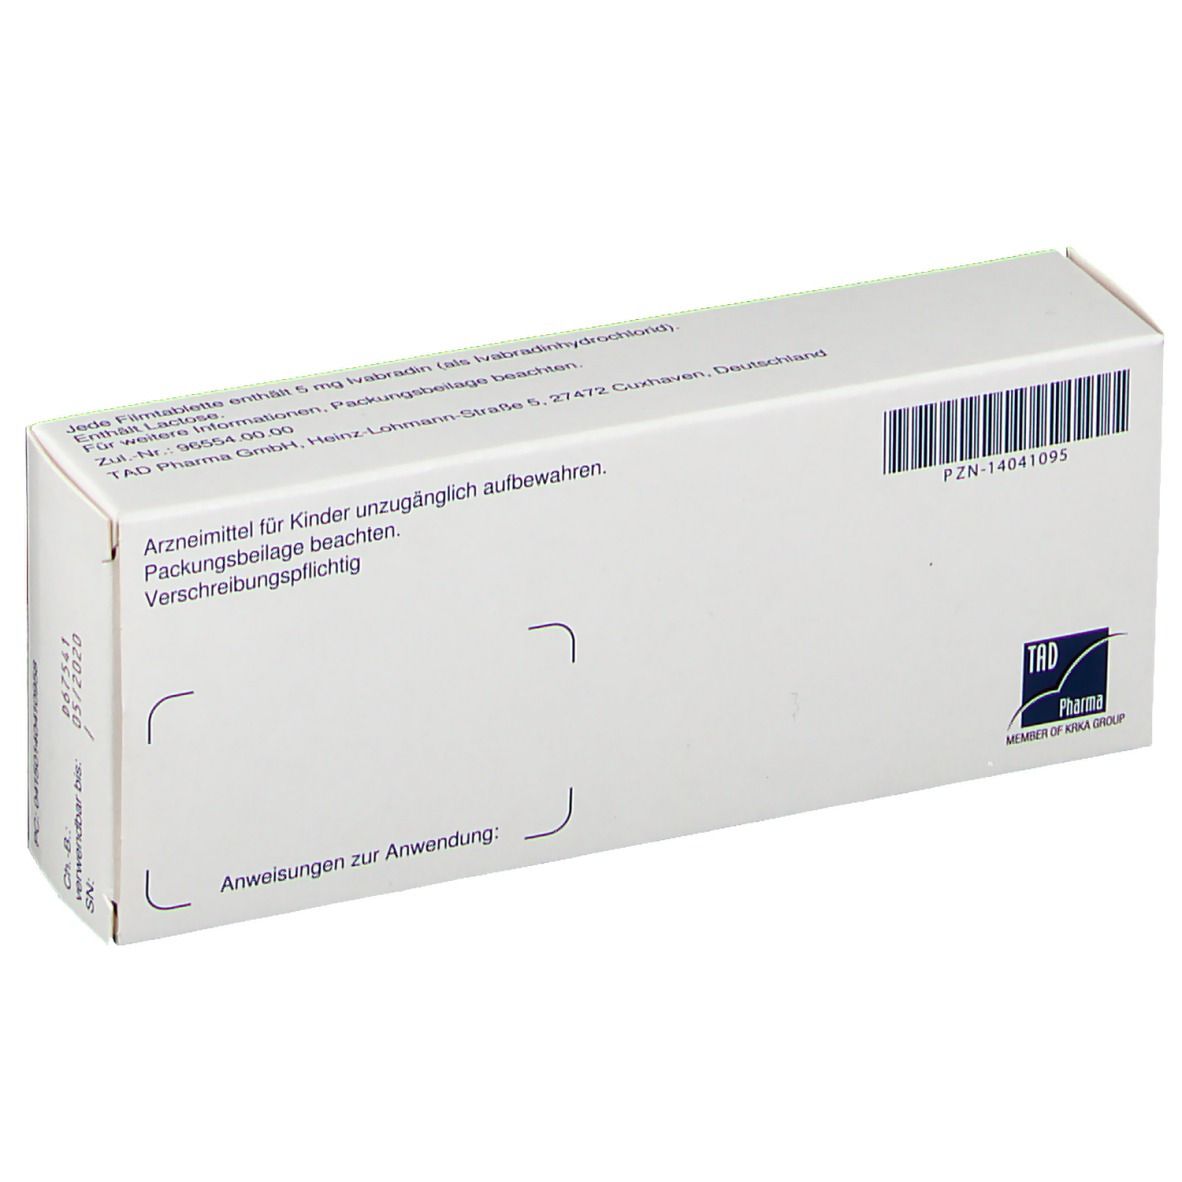 Ivabalan® 5 mg